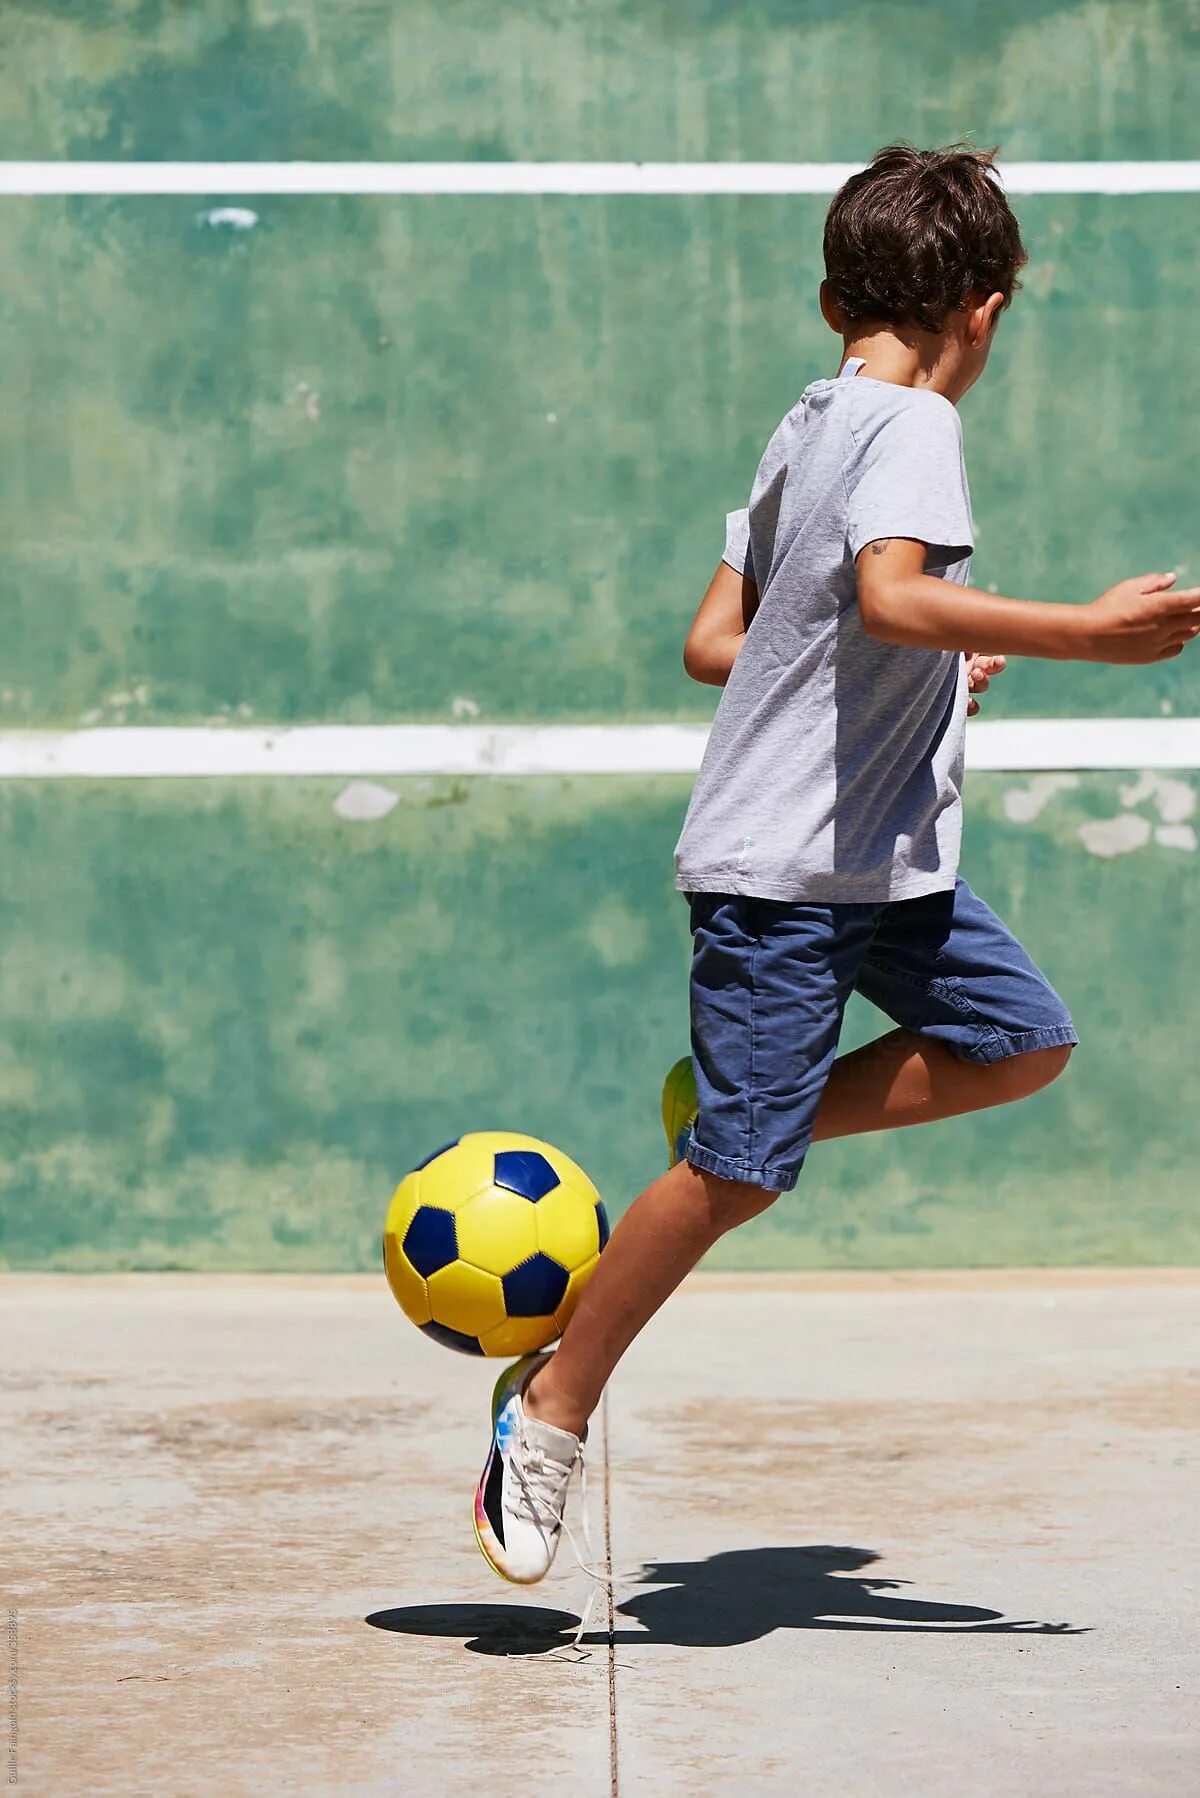 Спорт дети. Спорт футбол дети. Детский футбол тренировки. Футбол картинки для детей. Children do sports